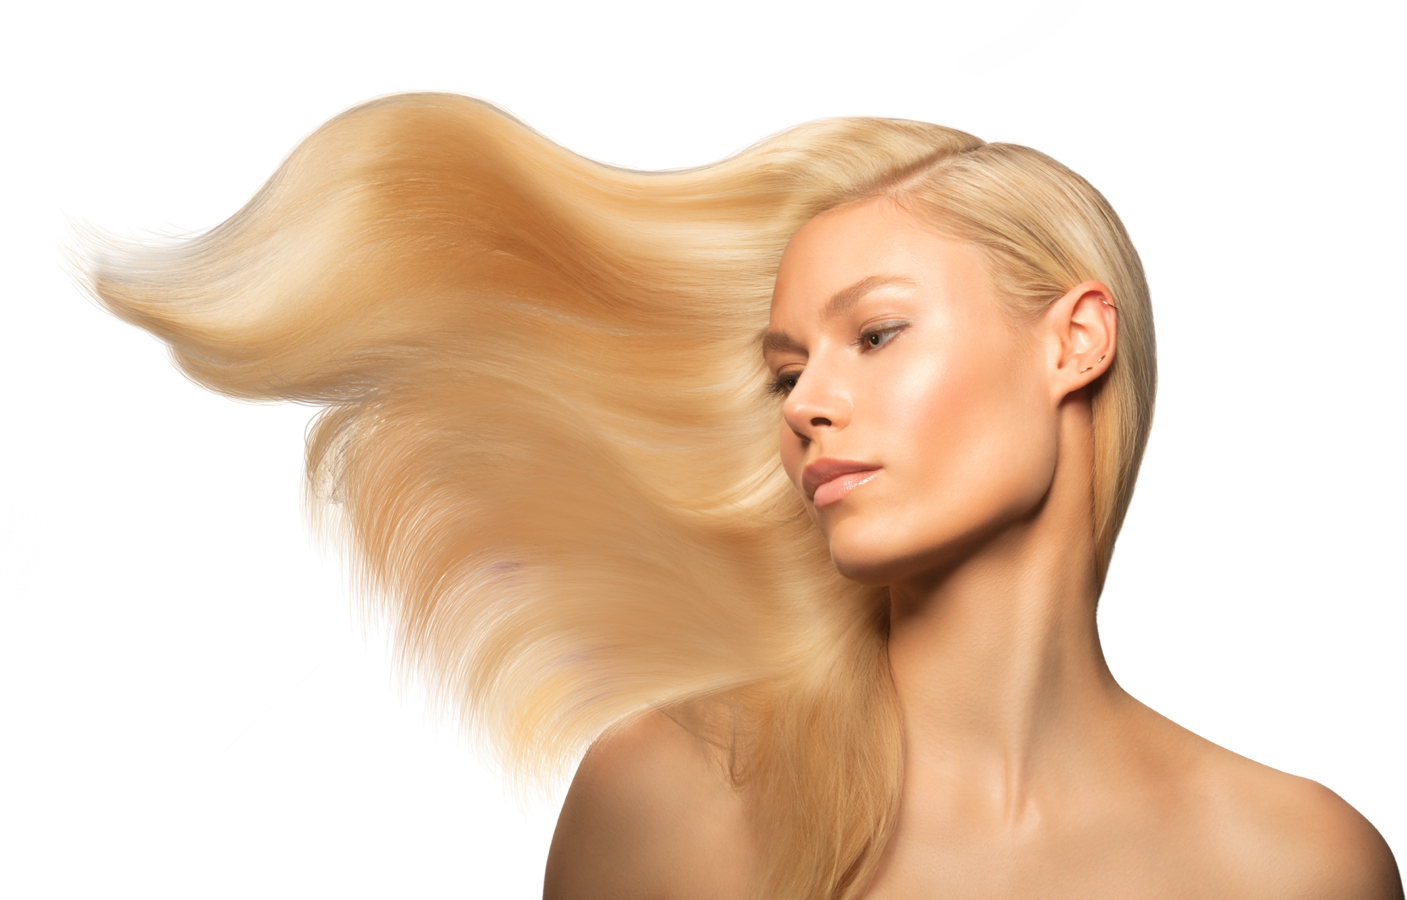 Photo Of Hair Model - Hair Model - 1407x900 Wallpaper 